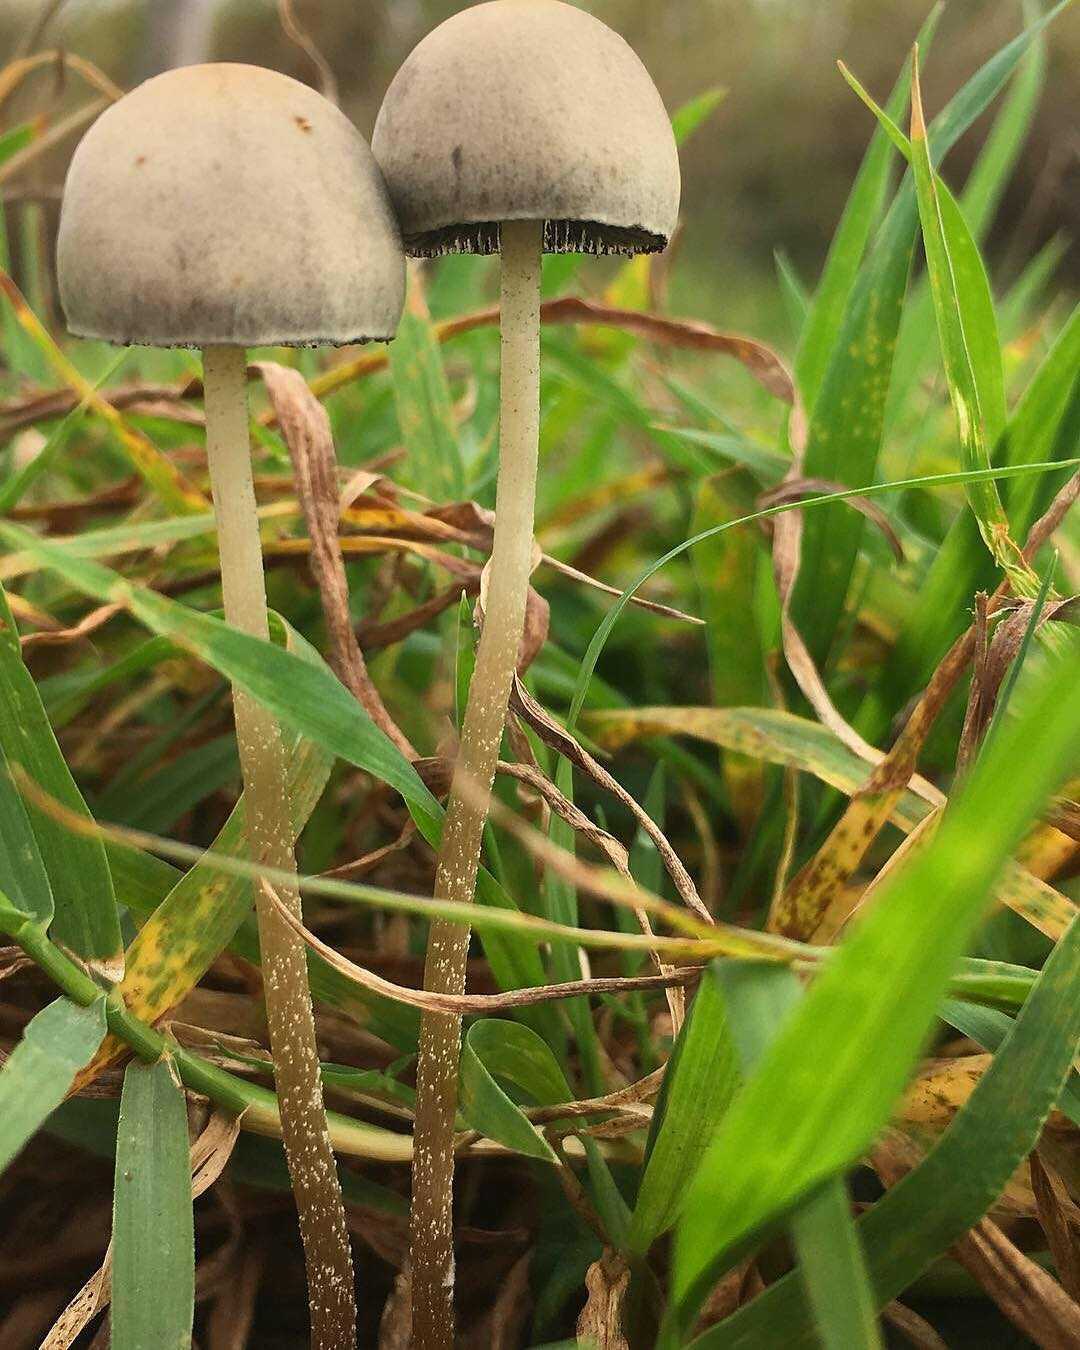 Гриб панеолус колокольчатый (навозник колокольчатый) - несъедобный гриб. описание, фото.